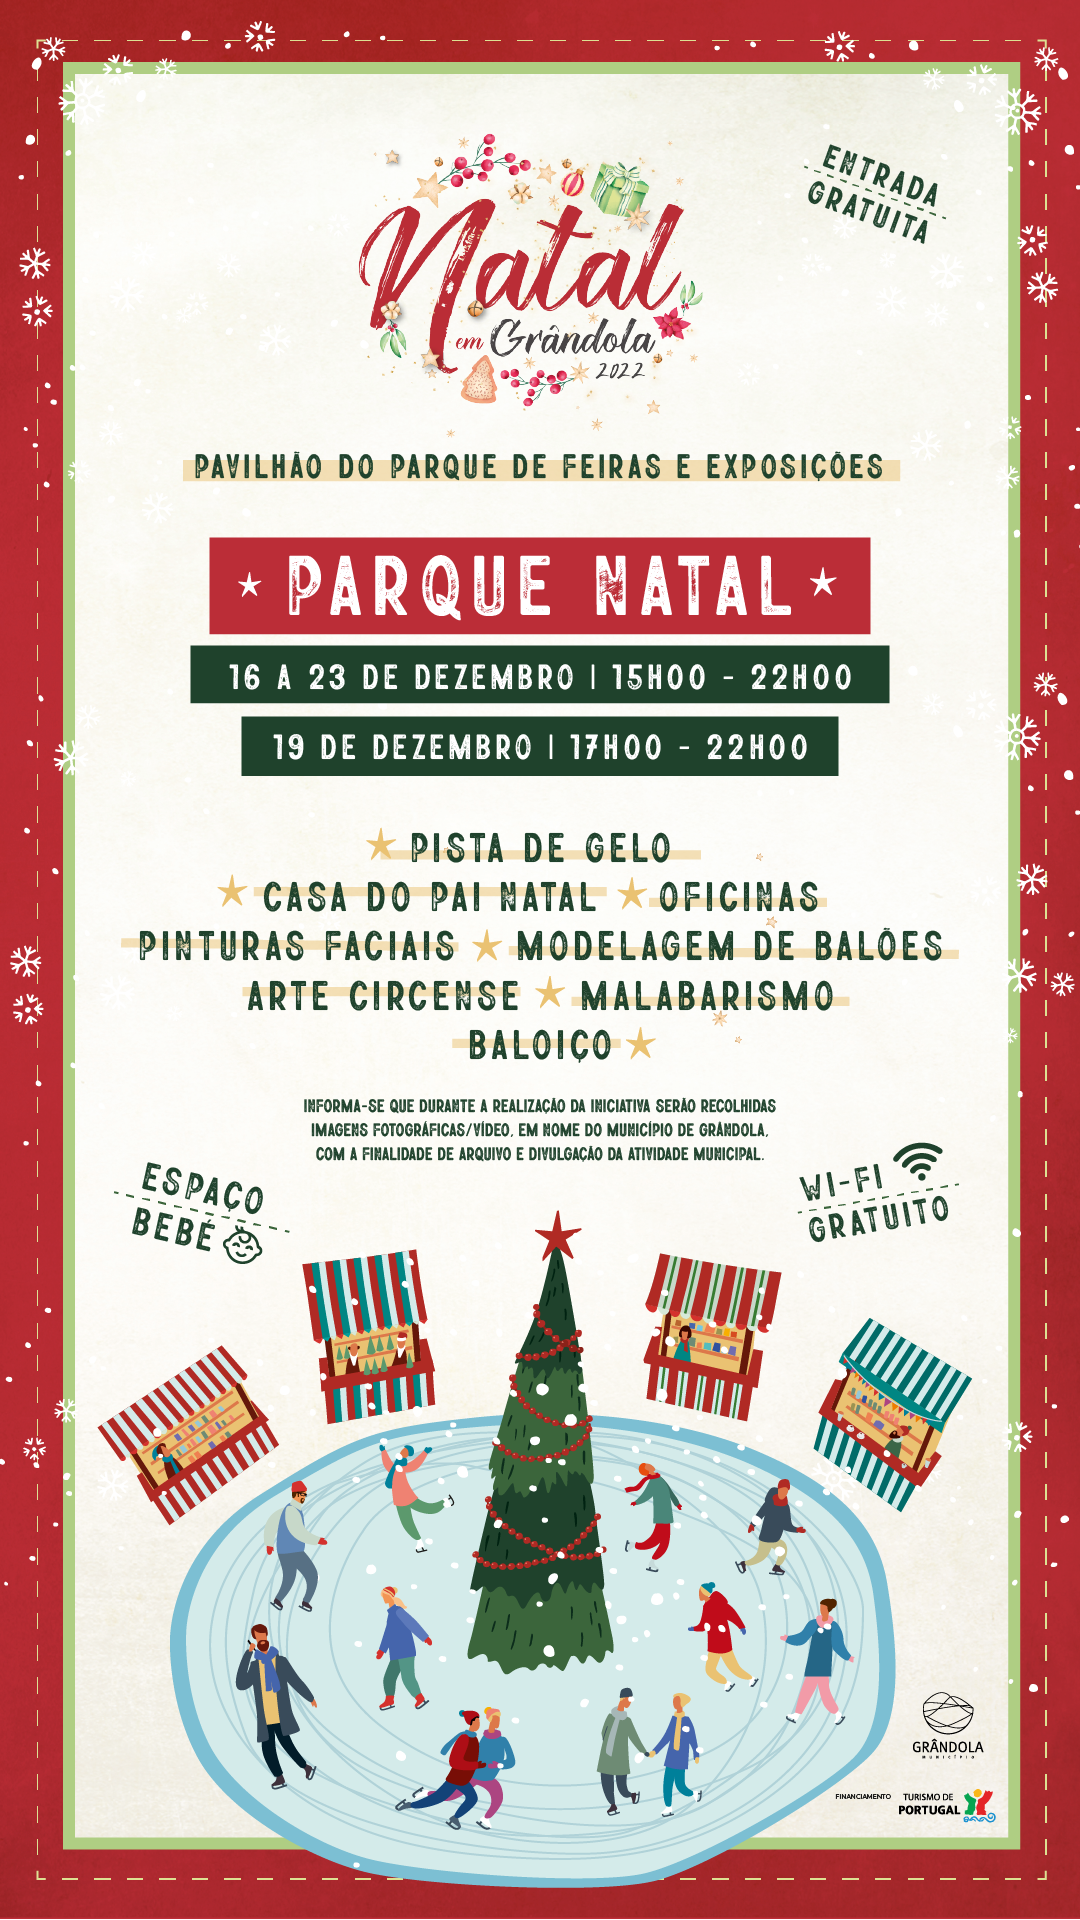 Parque Natal em Grândola: onde a diversão acontece | 16 a 23 dezembro